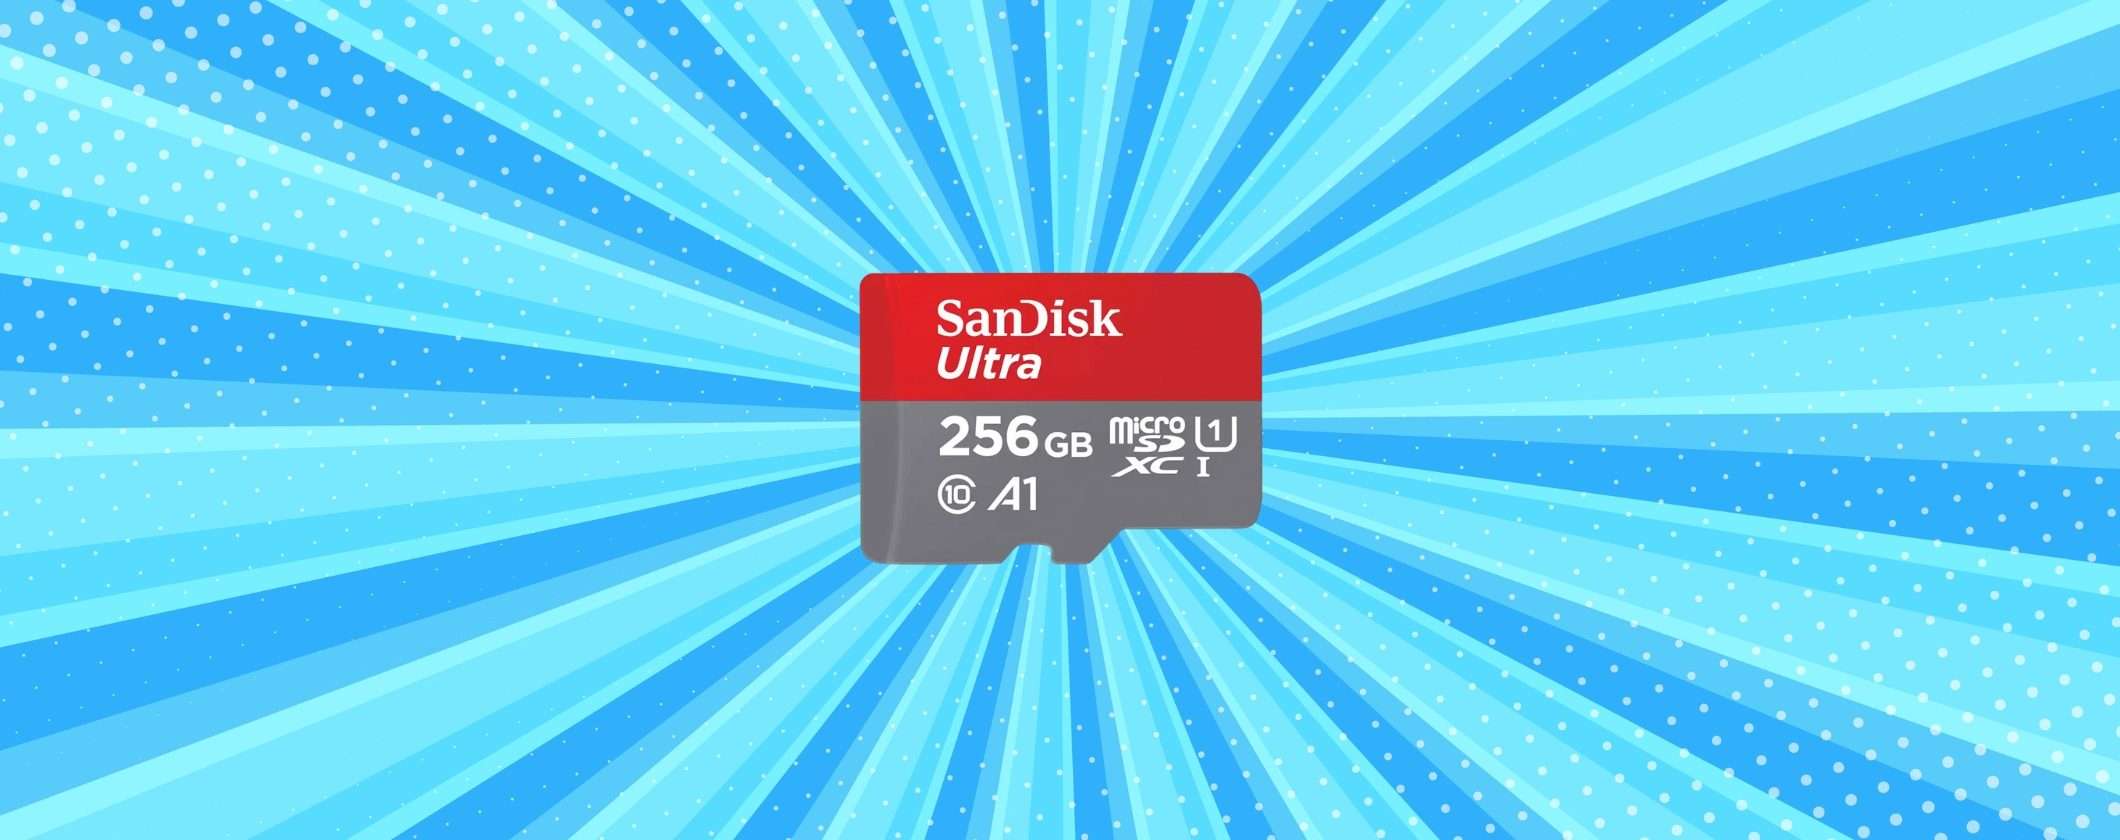 MicroSD SanDisk 256GB sotto i 30€ su Unieuro